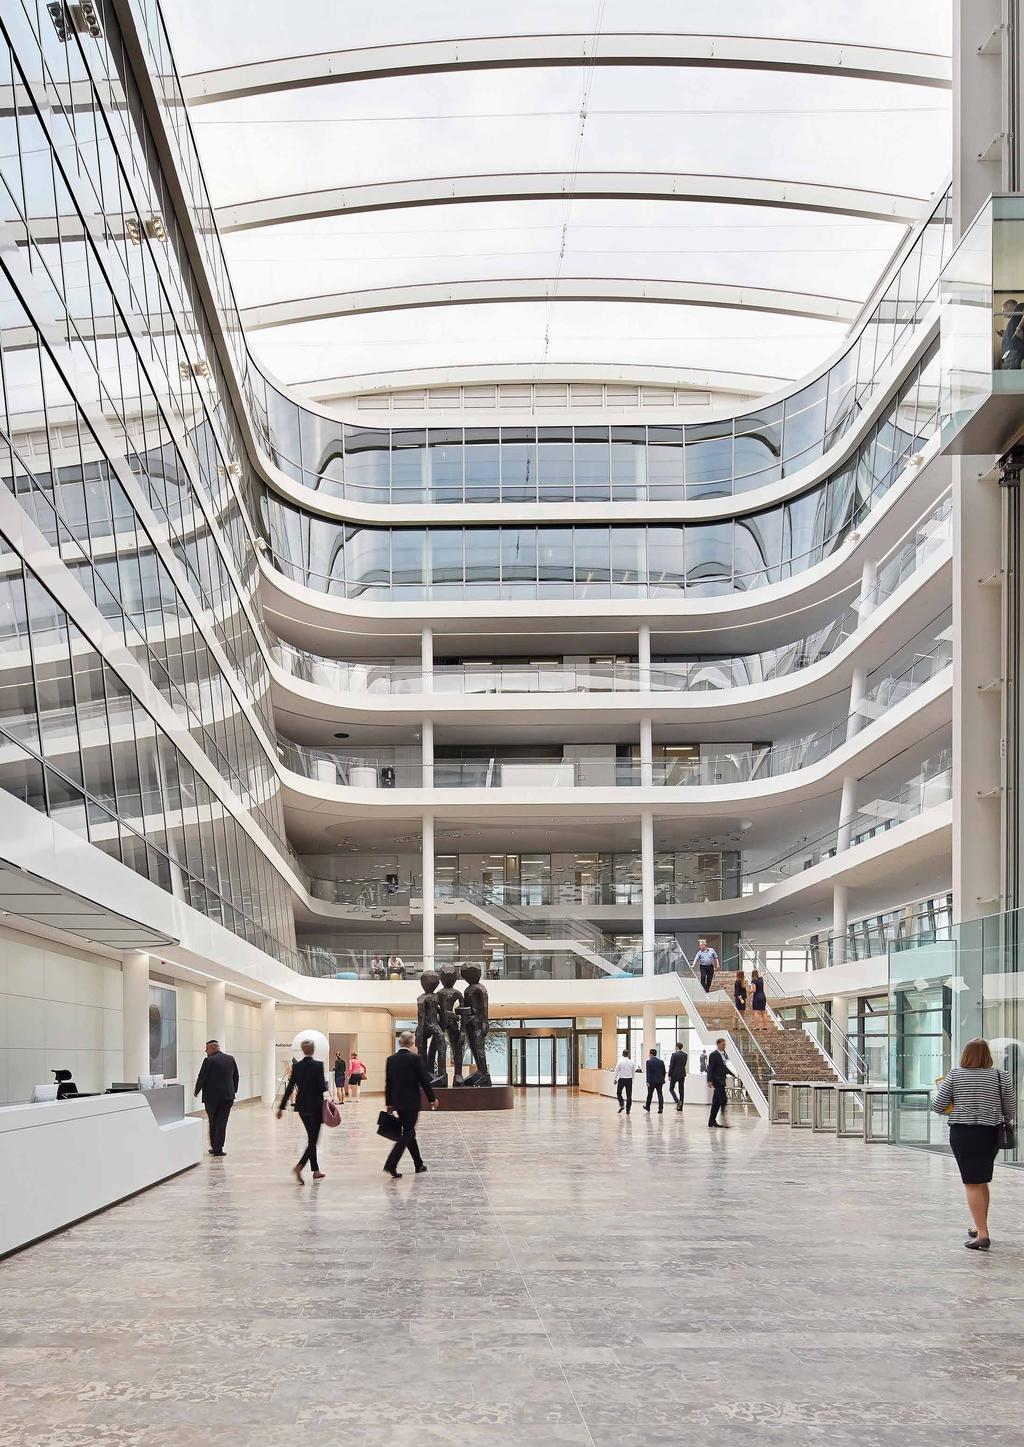 Seit 2016 transportiert das neue Siemens-Headquarter in München das weltoffene, grüne und transparente Image des Unternehmens.